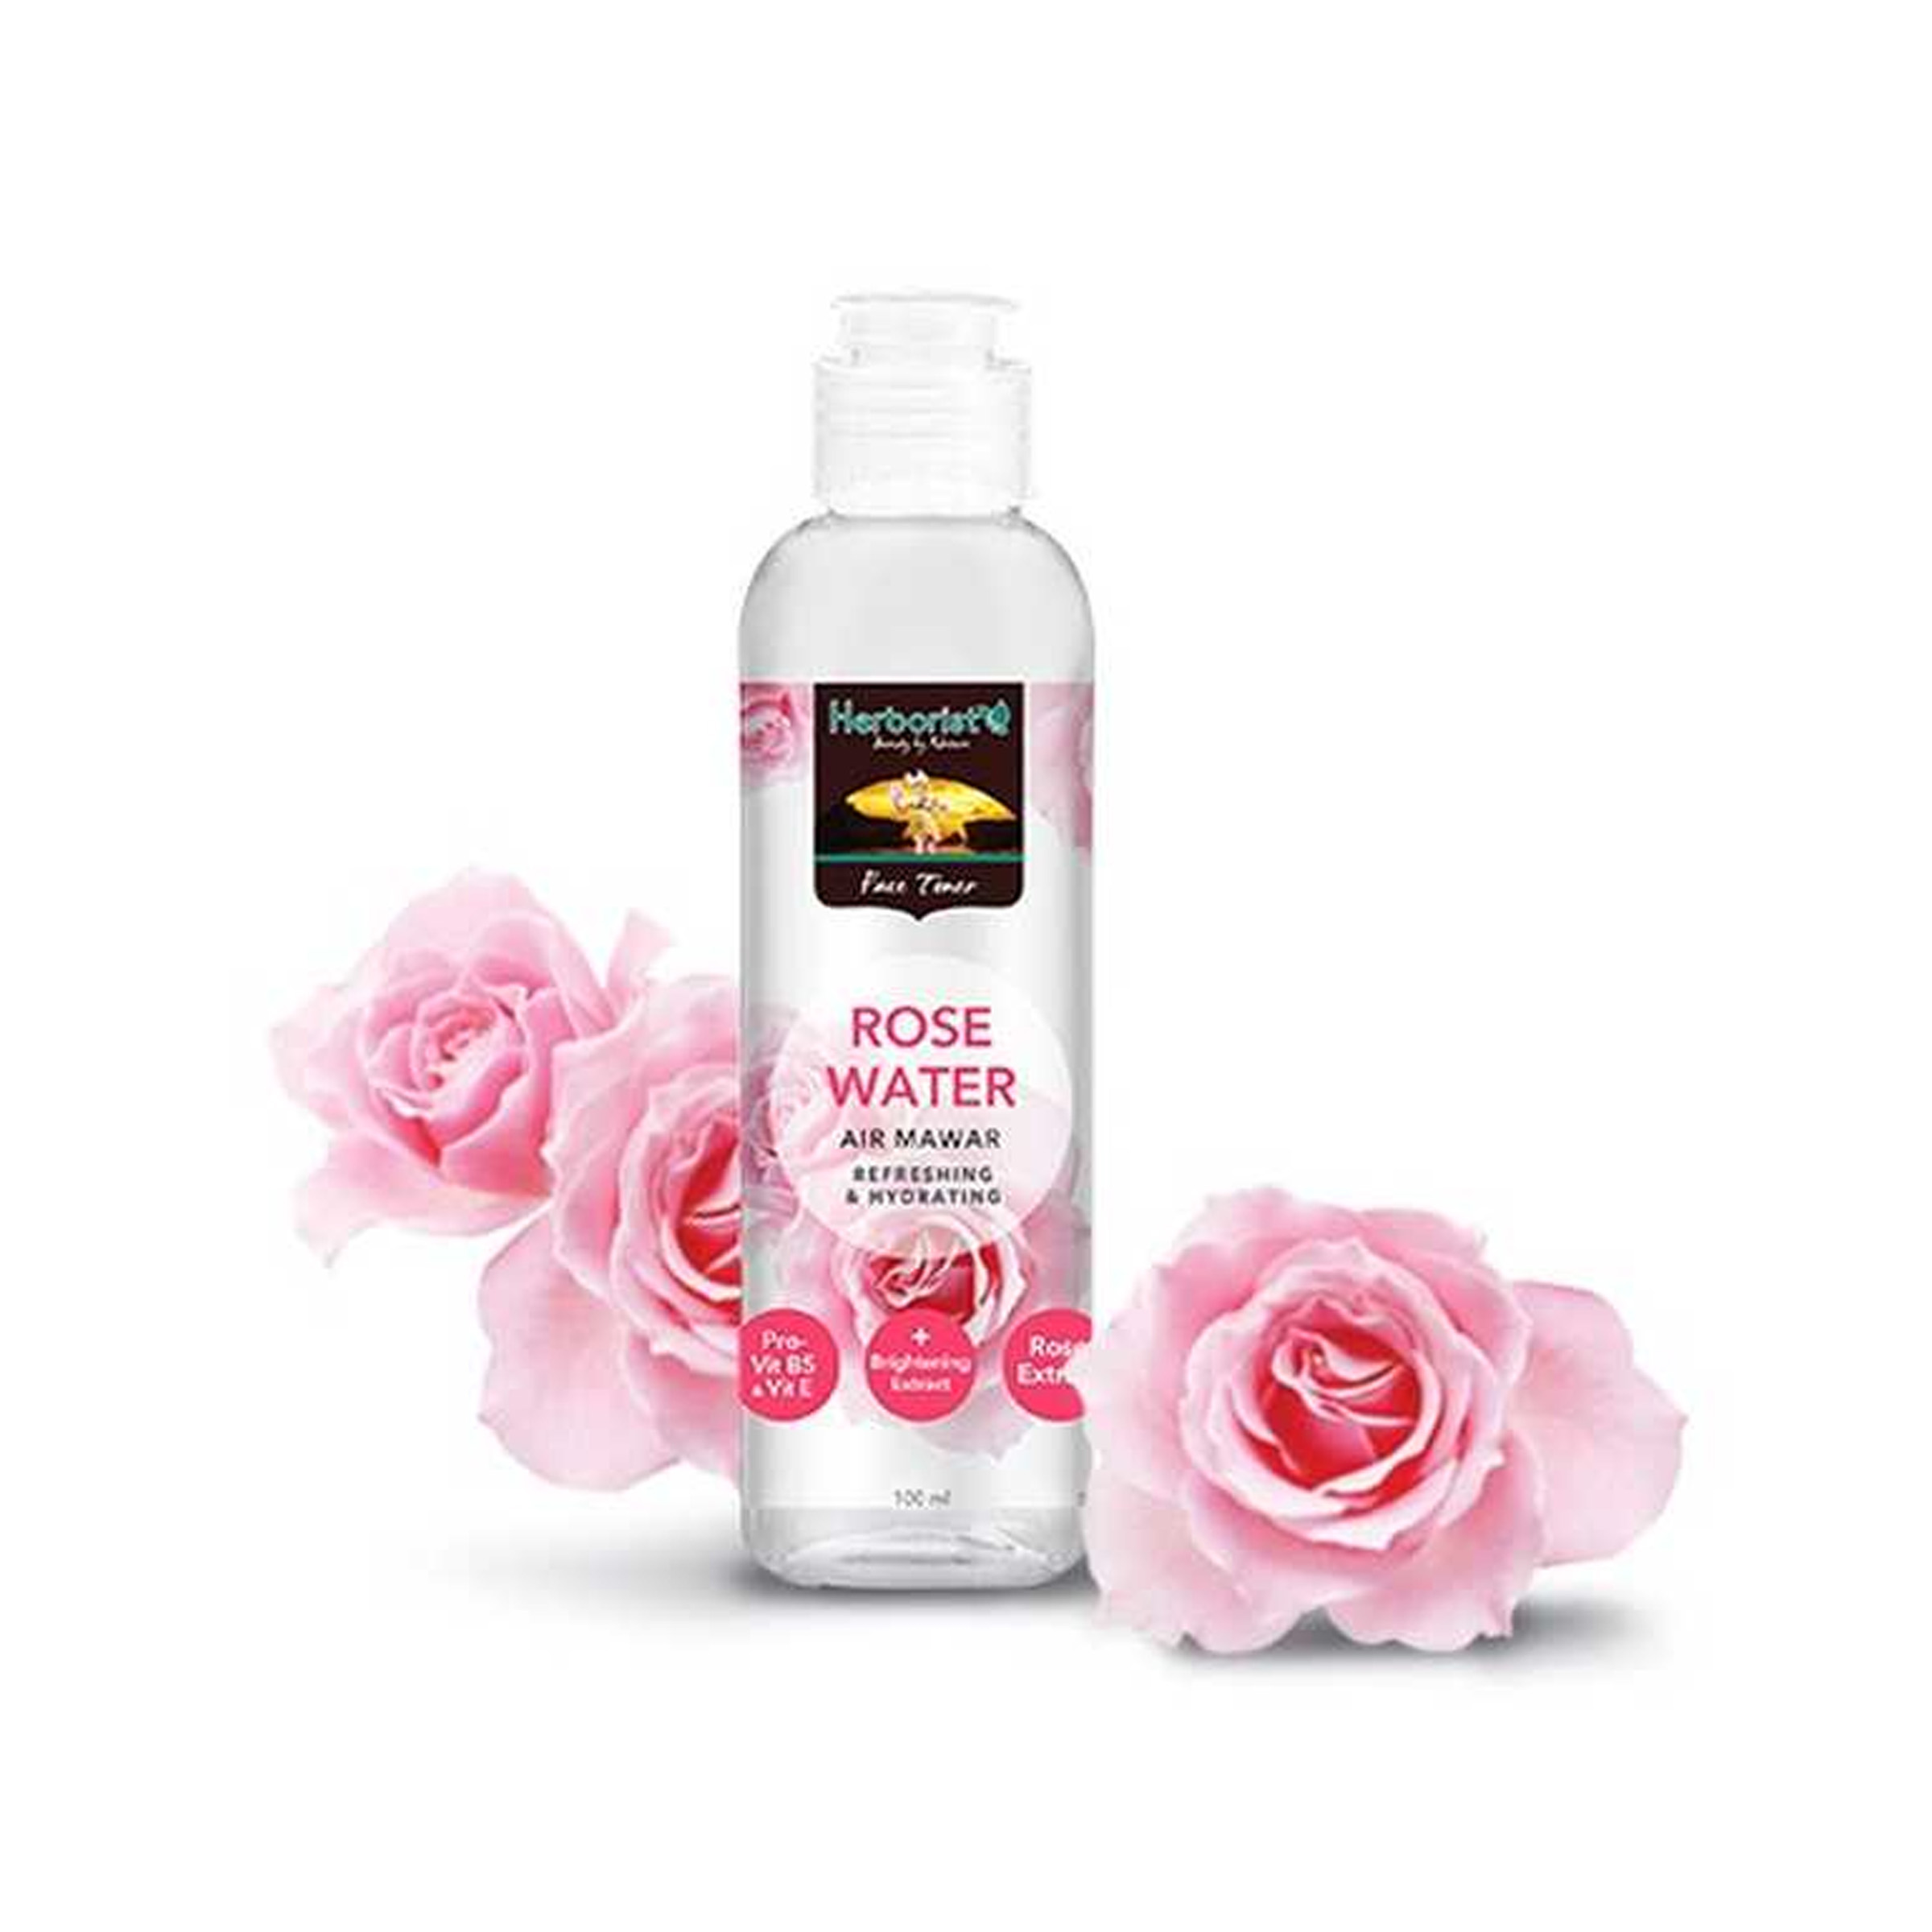 Herborist Rose Water - Air Mawar 100ml